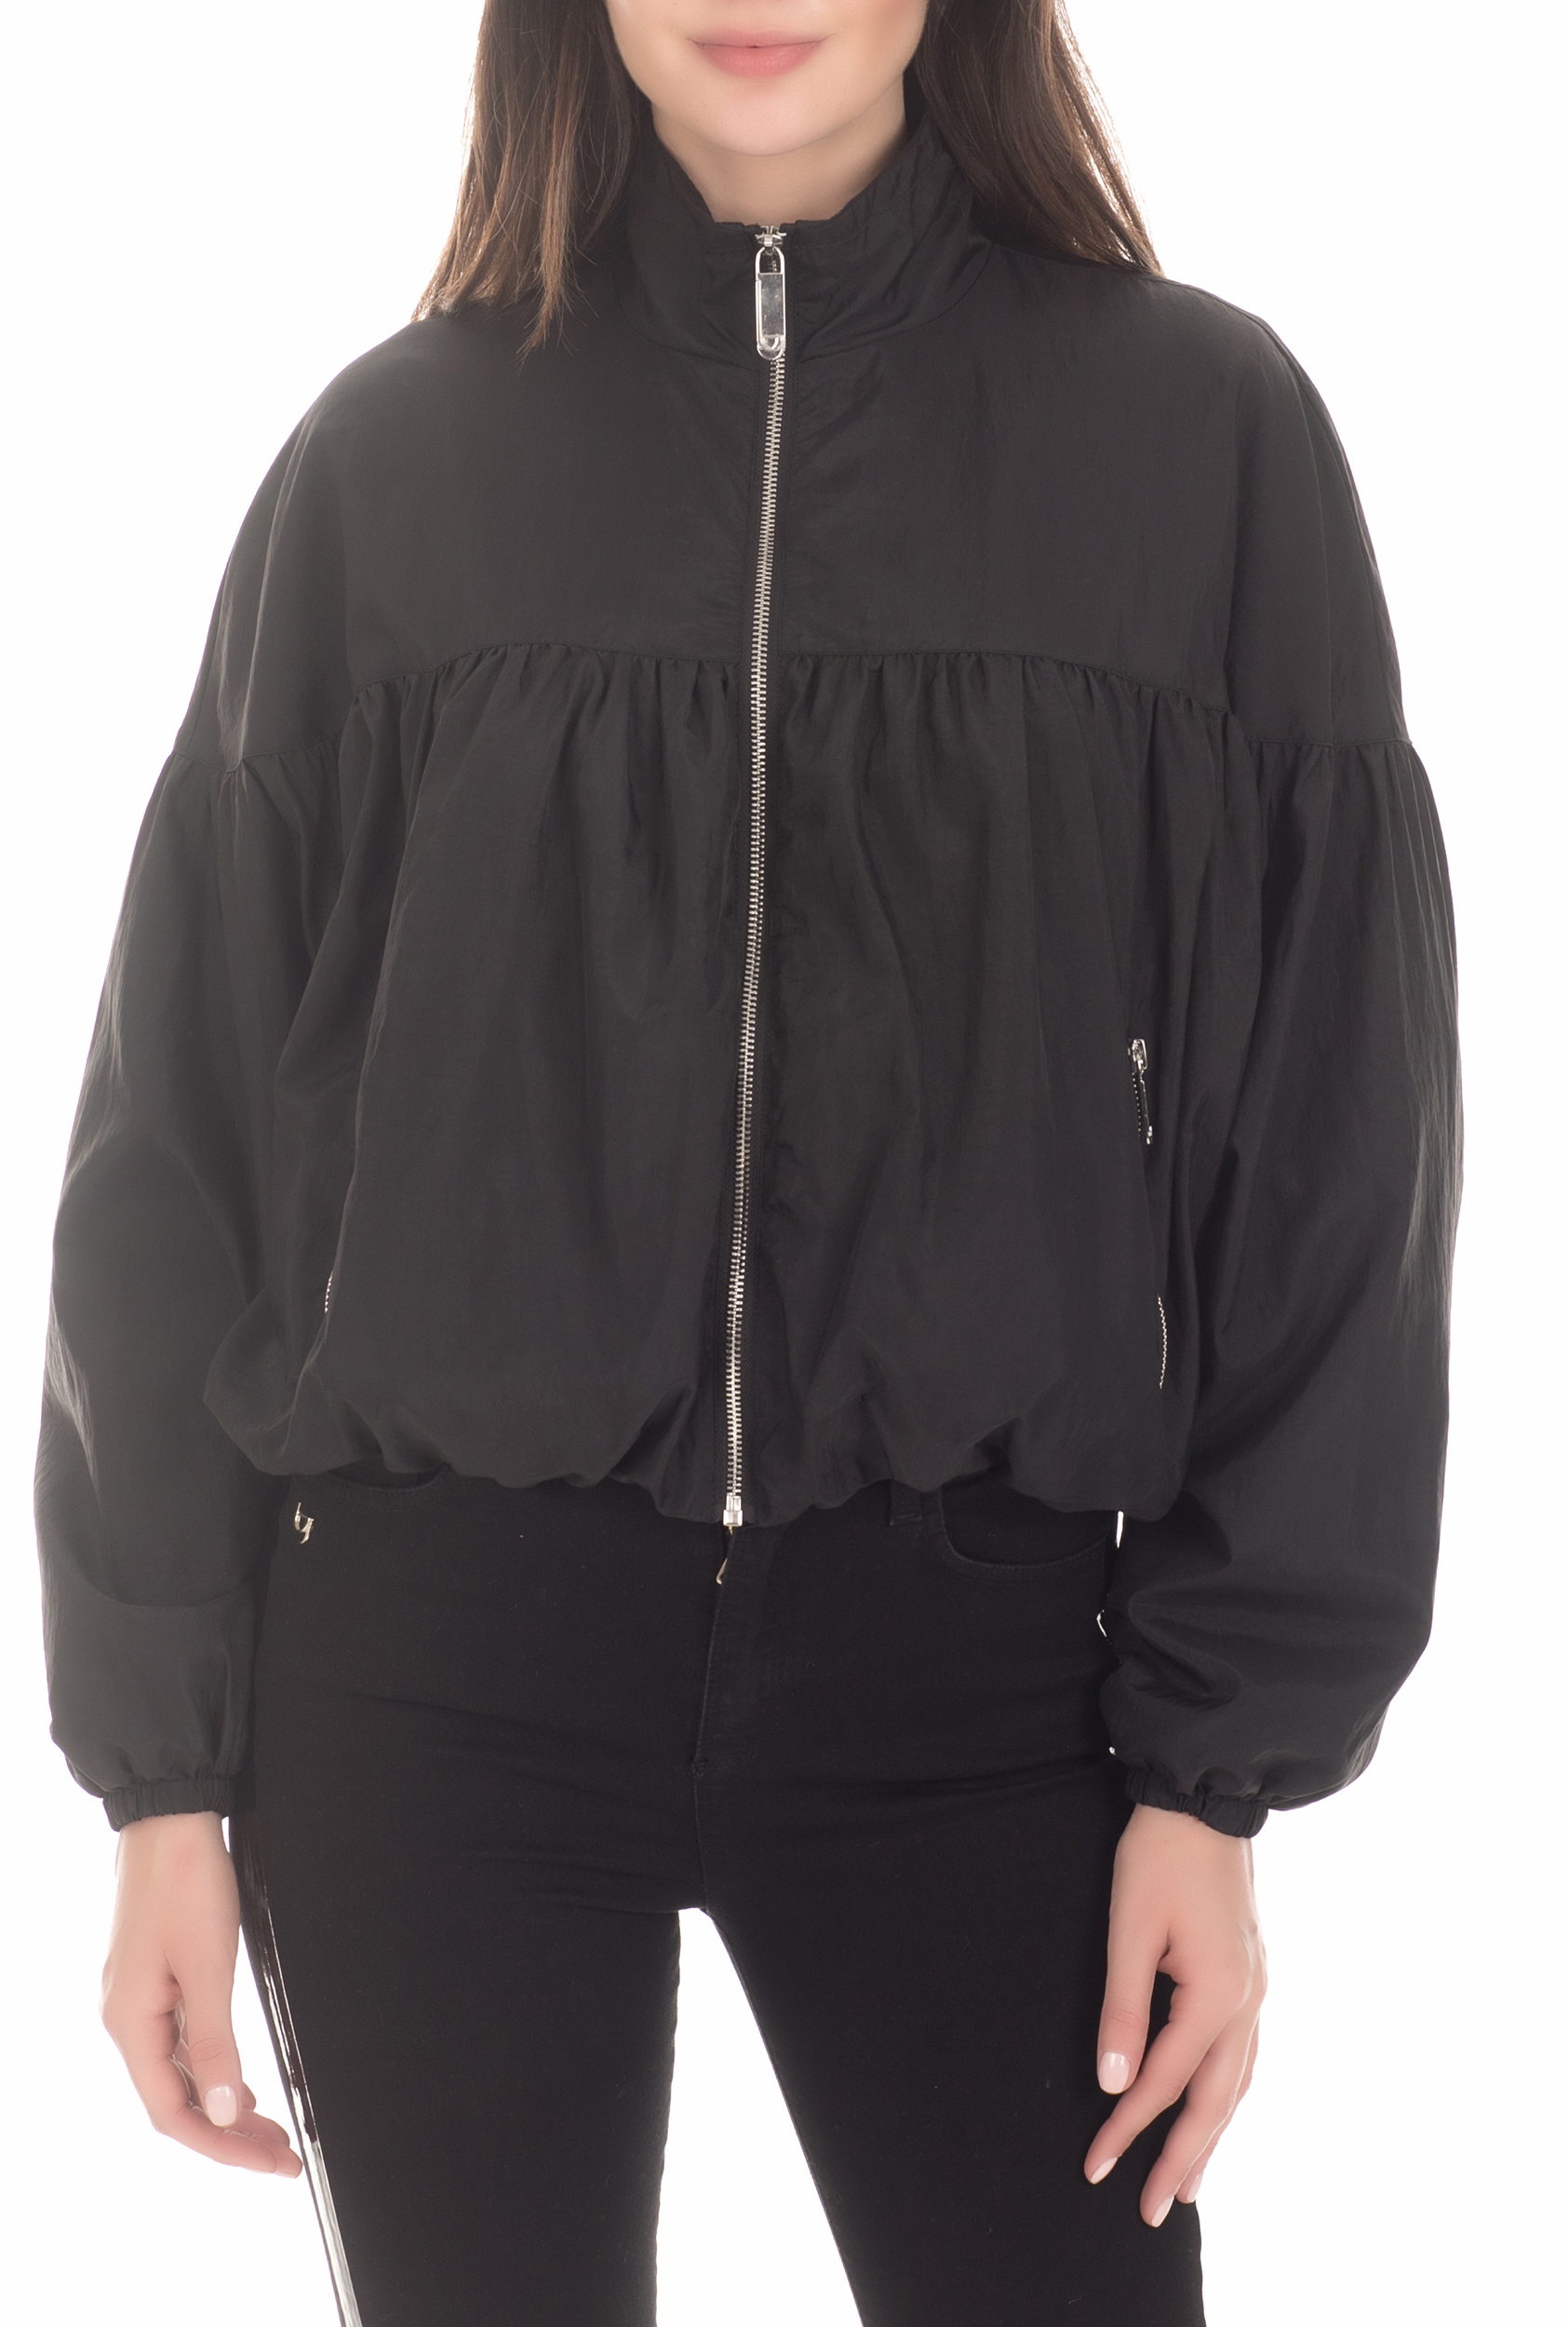 Γυναικεία/Ρούχα/Πανωφόρια/Τζάκετς BYBLOS - Γυναικείο jacket BYBLOS μαύρο